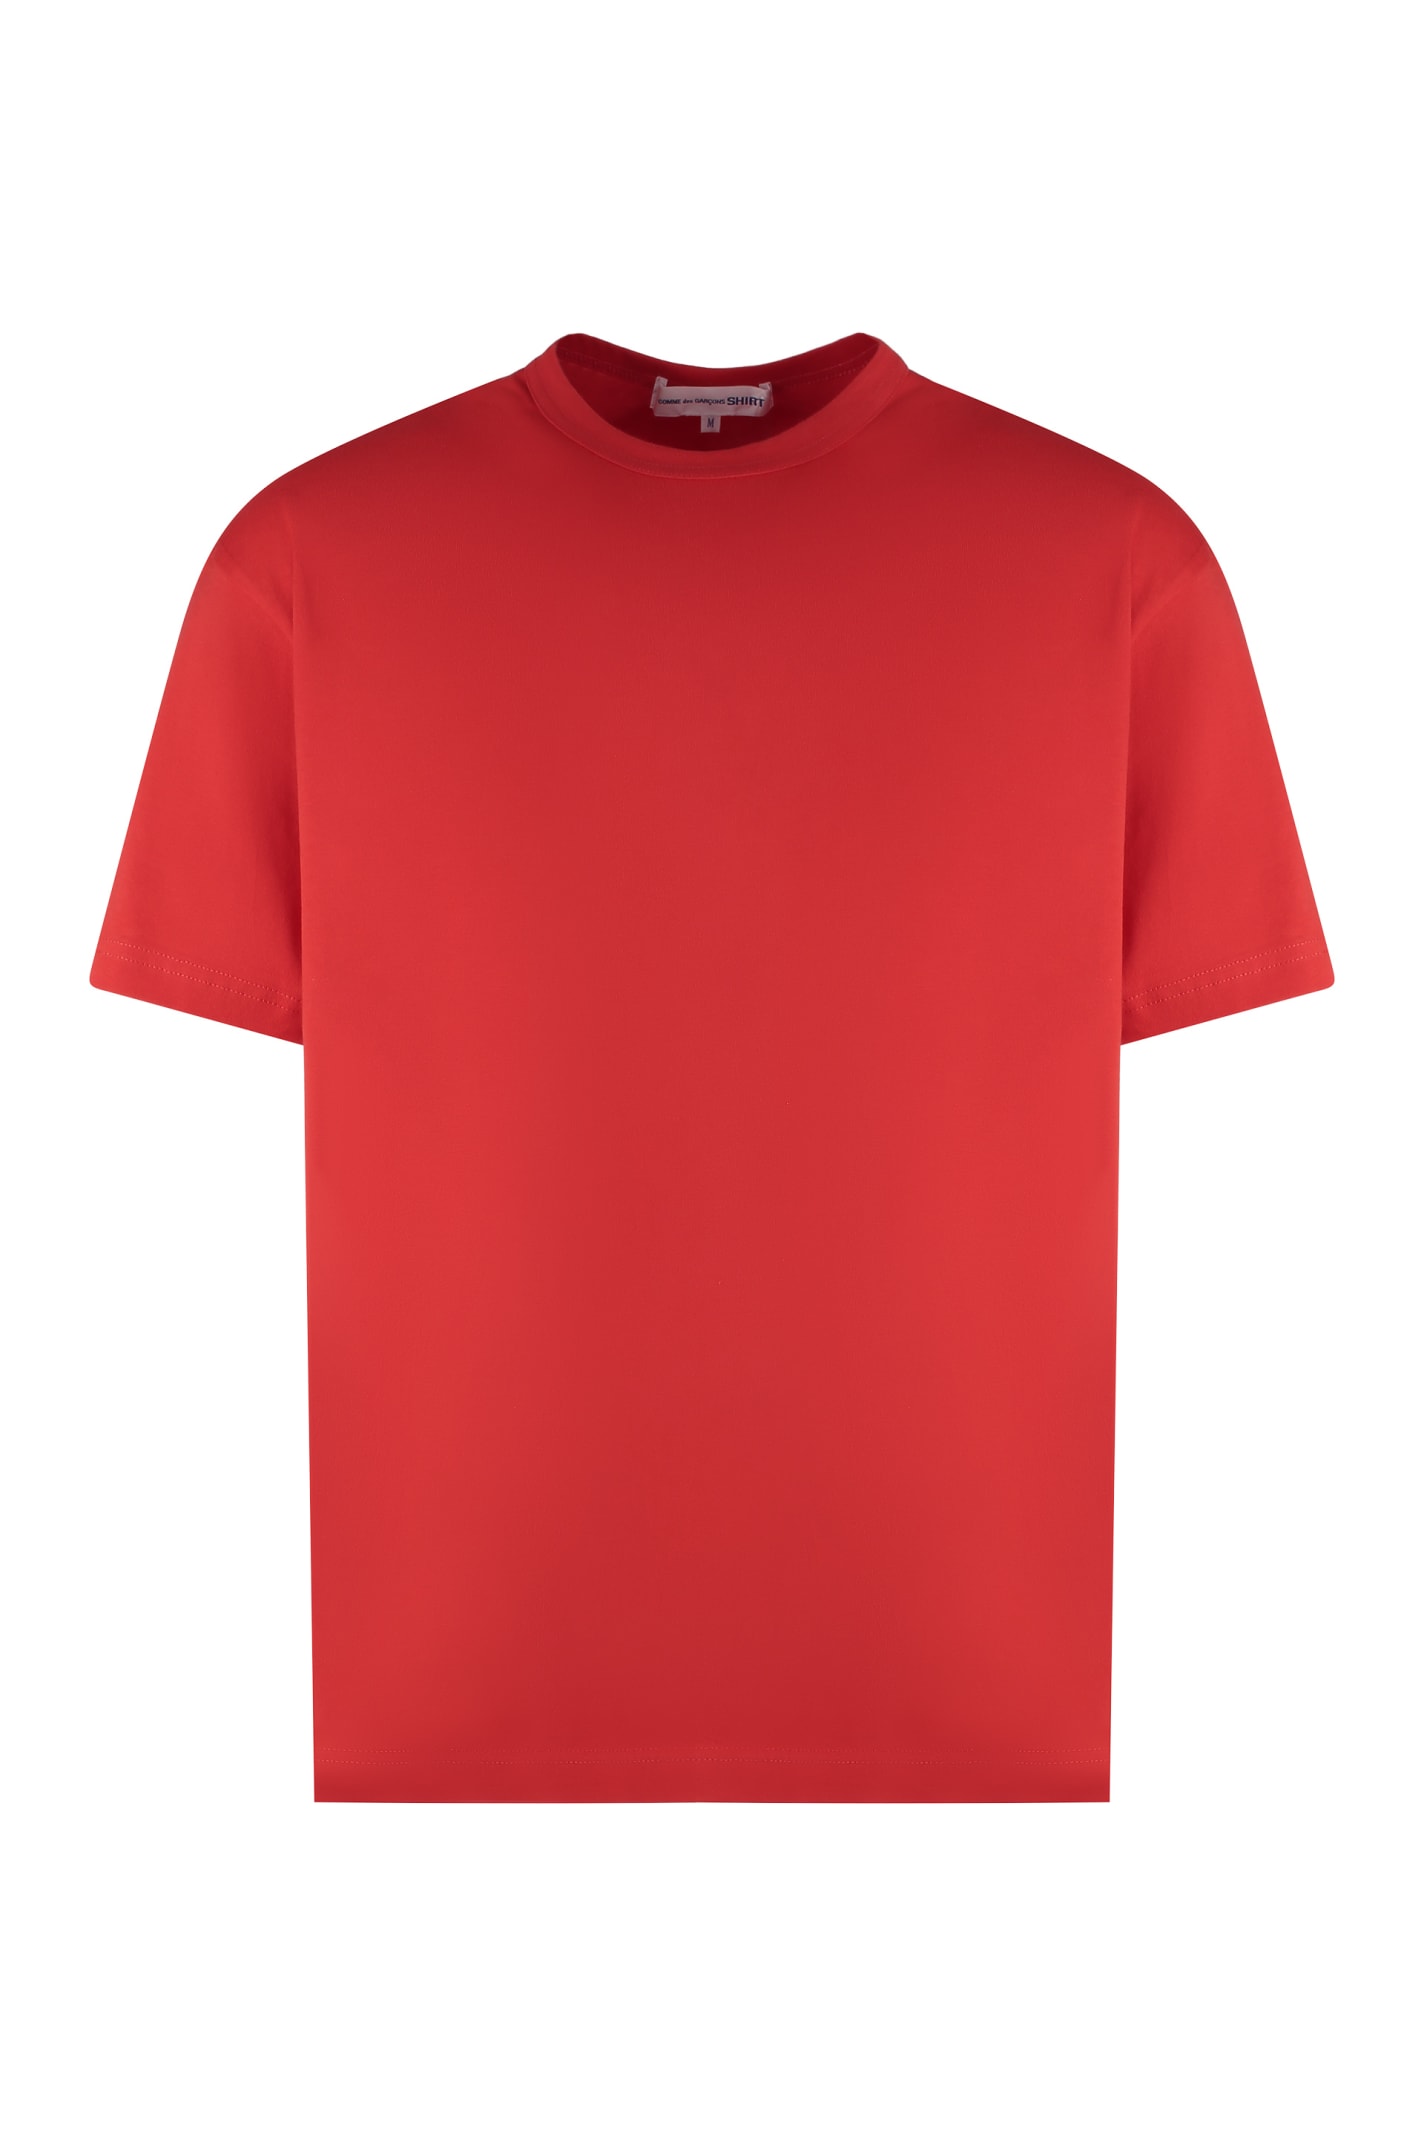 Comme Des Garçons Shirt Cotton T-shirt In Red